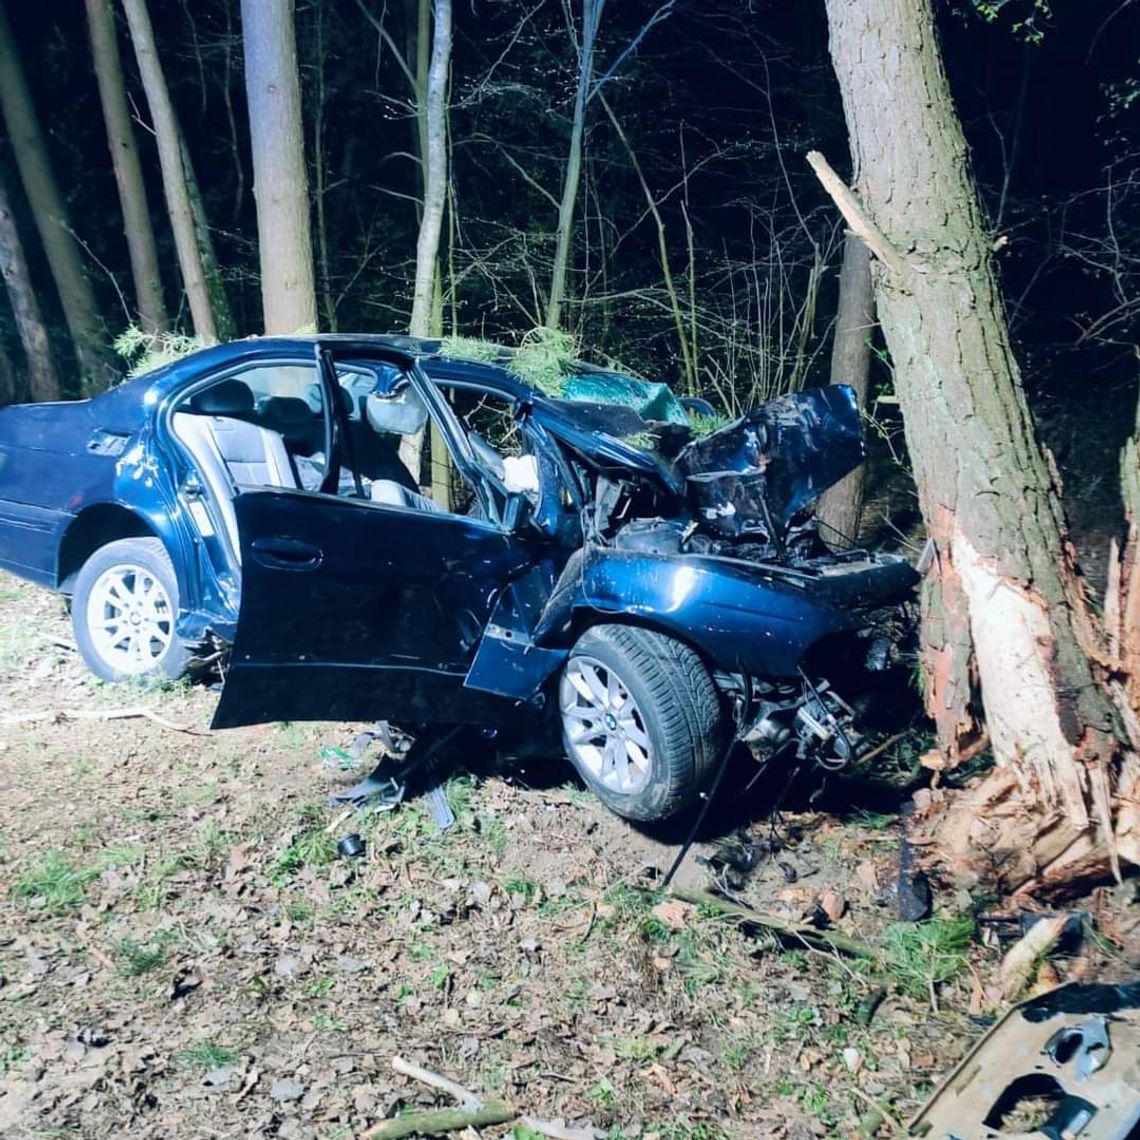 Rozpędzone BMW wbiło się w drzewo. Zginęło dwóch młodych mężczyzn, trzeci jest ciężko ranny